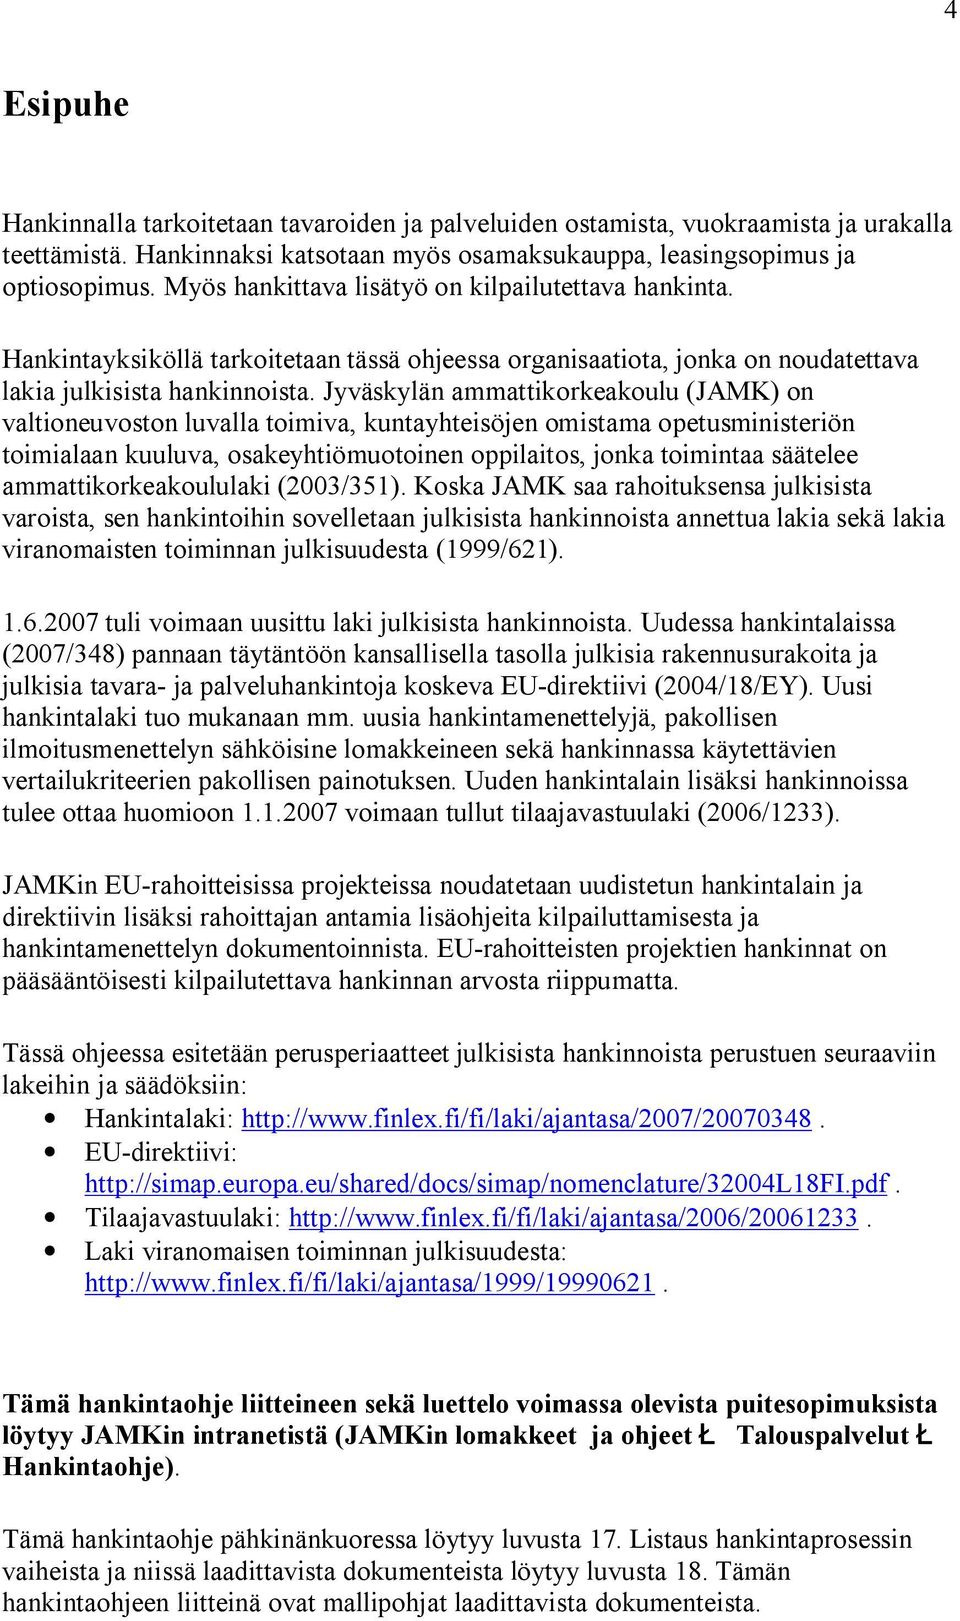 Jyväskylän ammattikorkeakoulu (JAMK) on valtioneuvoston luvalla toimiva, kuntayhteisöjen omistama opetusministeriön toimialaan kuuluva, osakeyhtiömuotoinen oppilaitos, jonka toimintaa säätelee